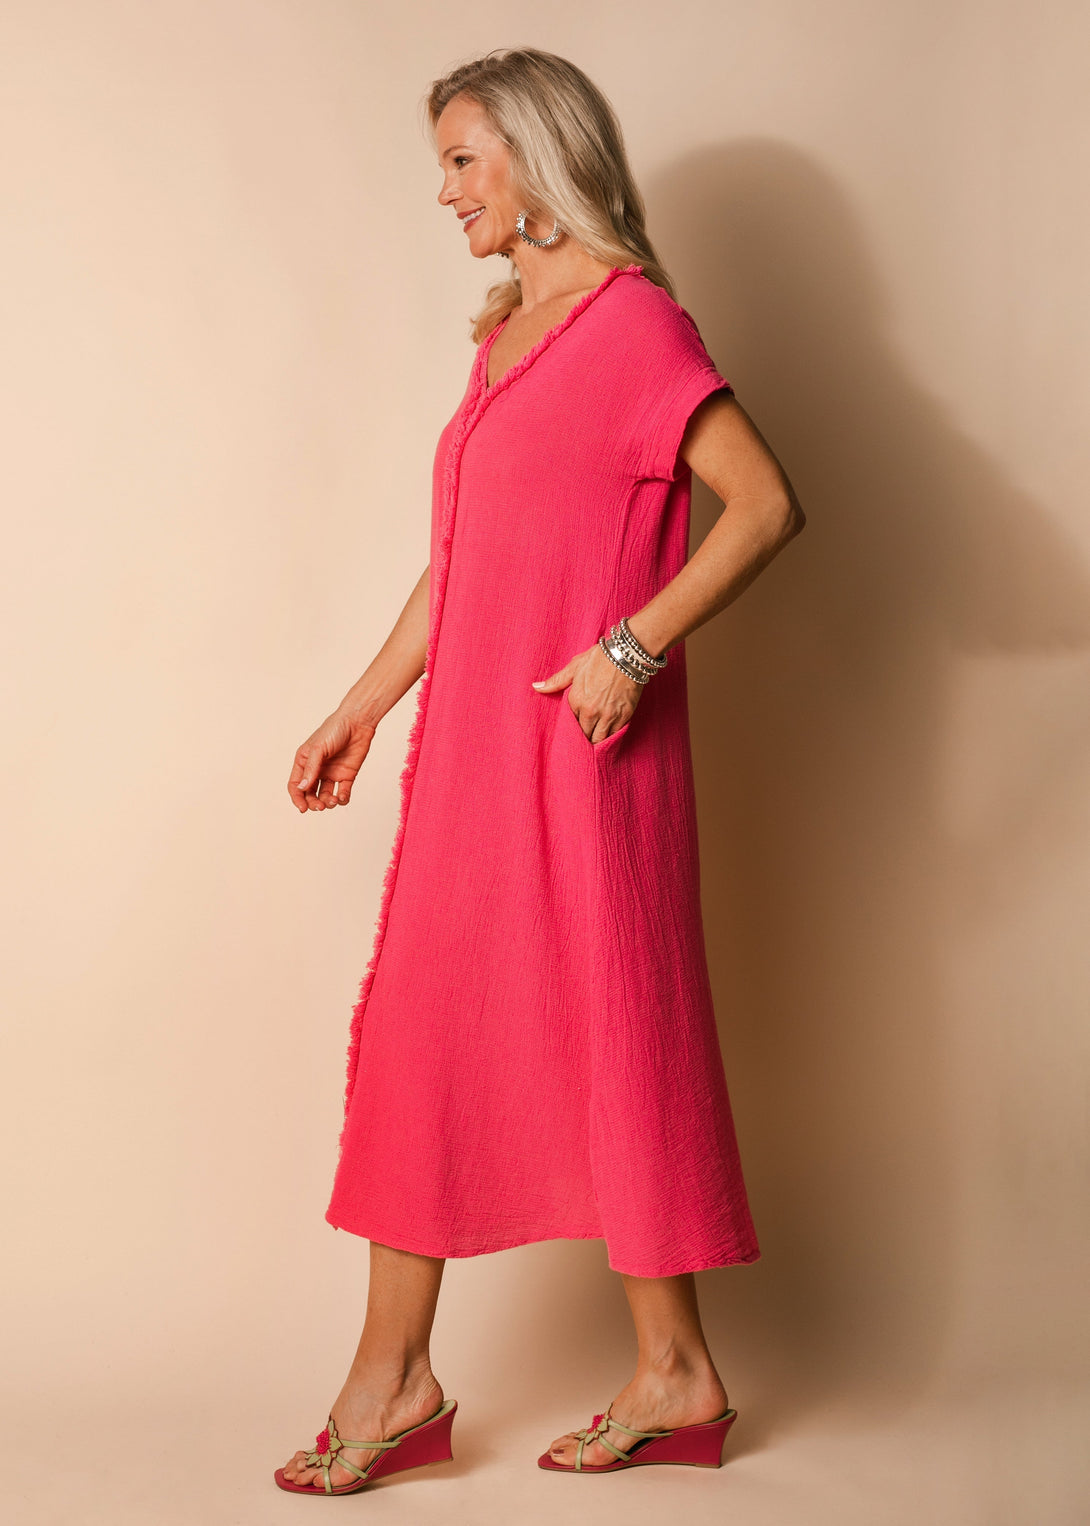 Kaidi Linen Dress in Raspberry Sorbet